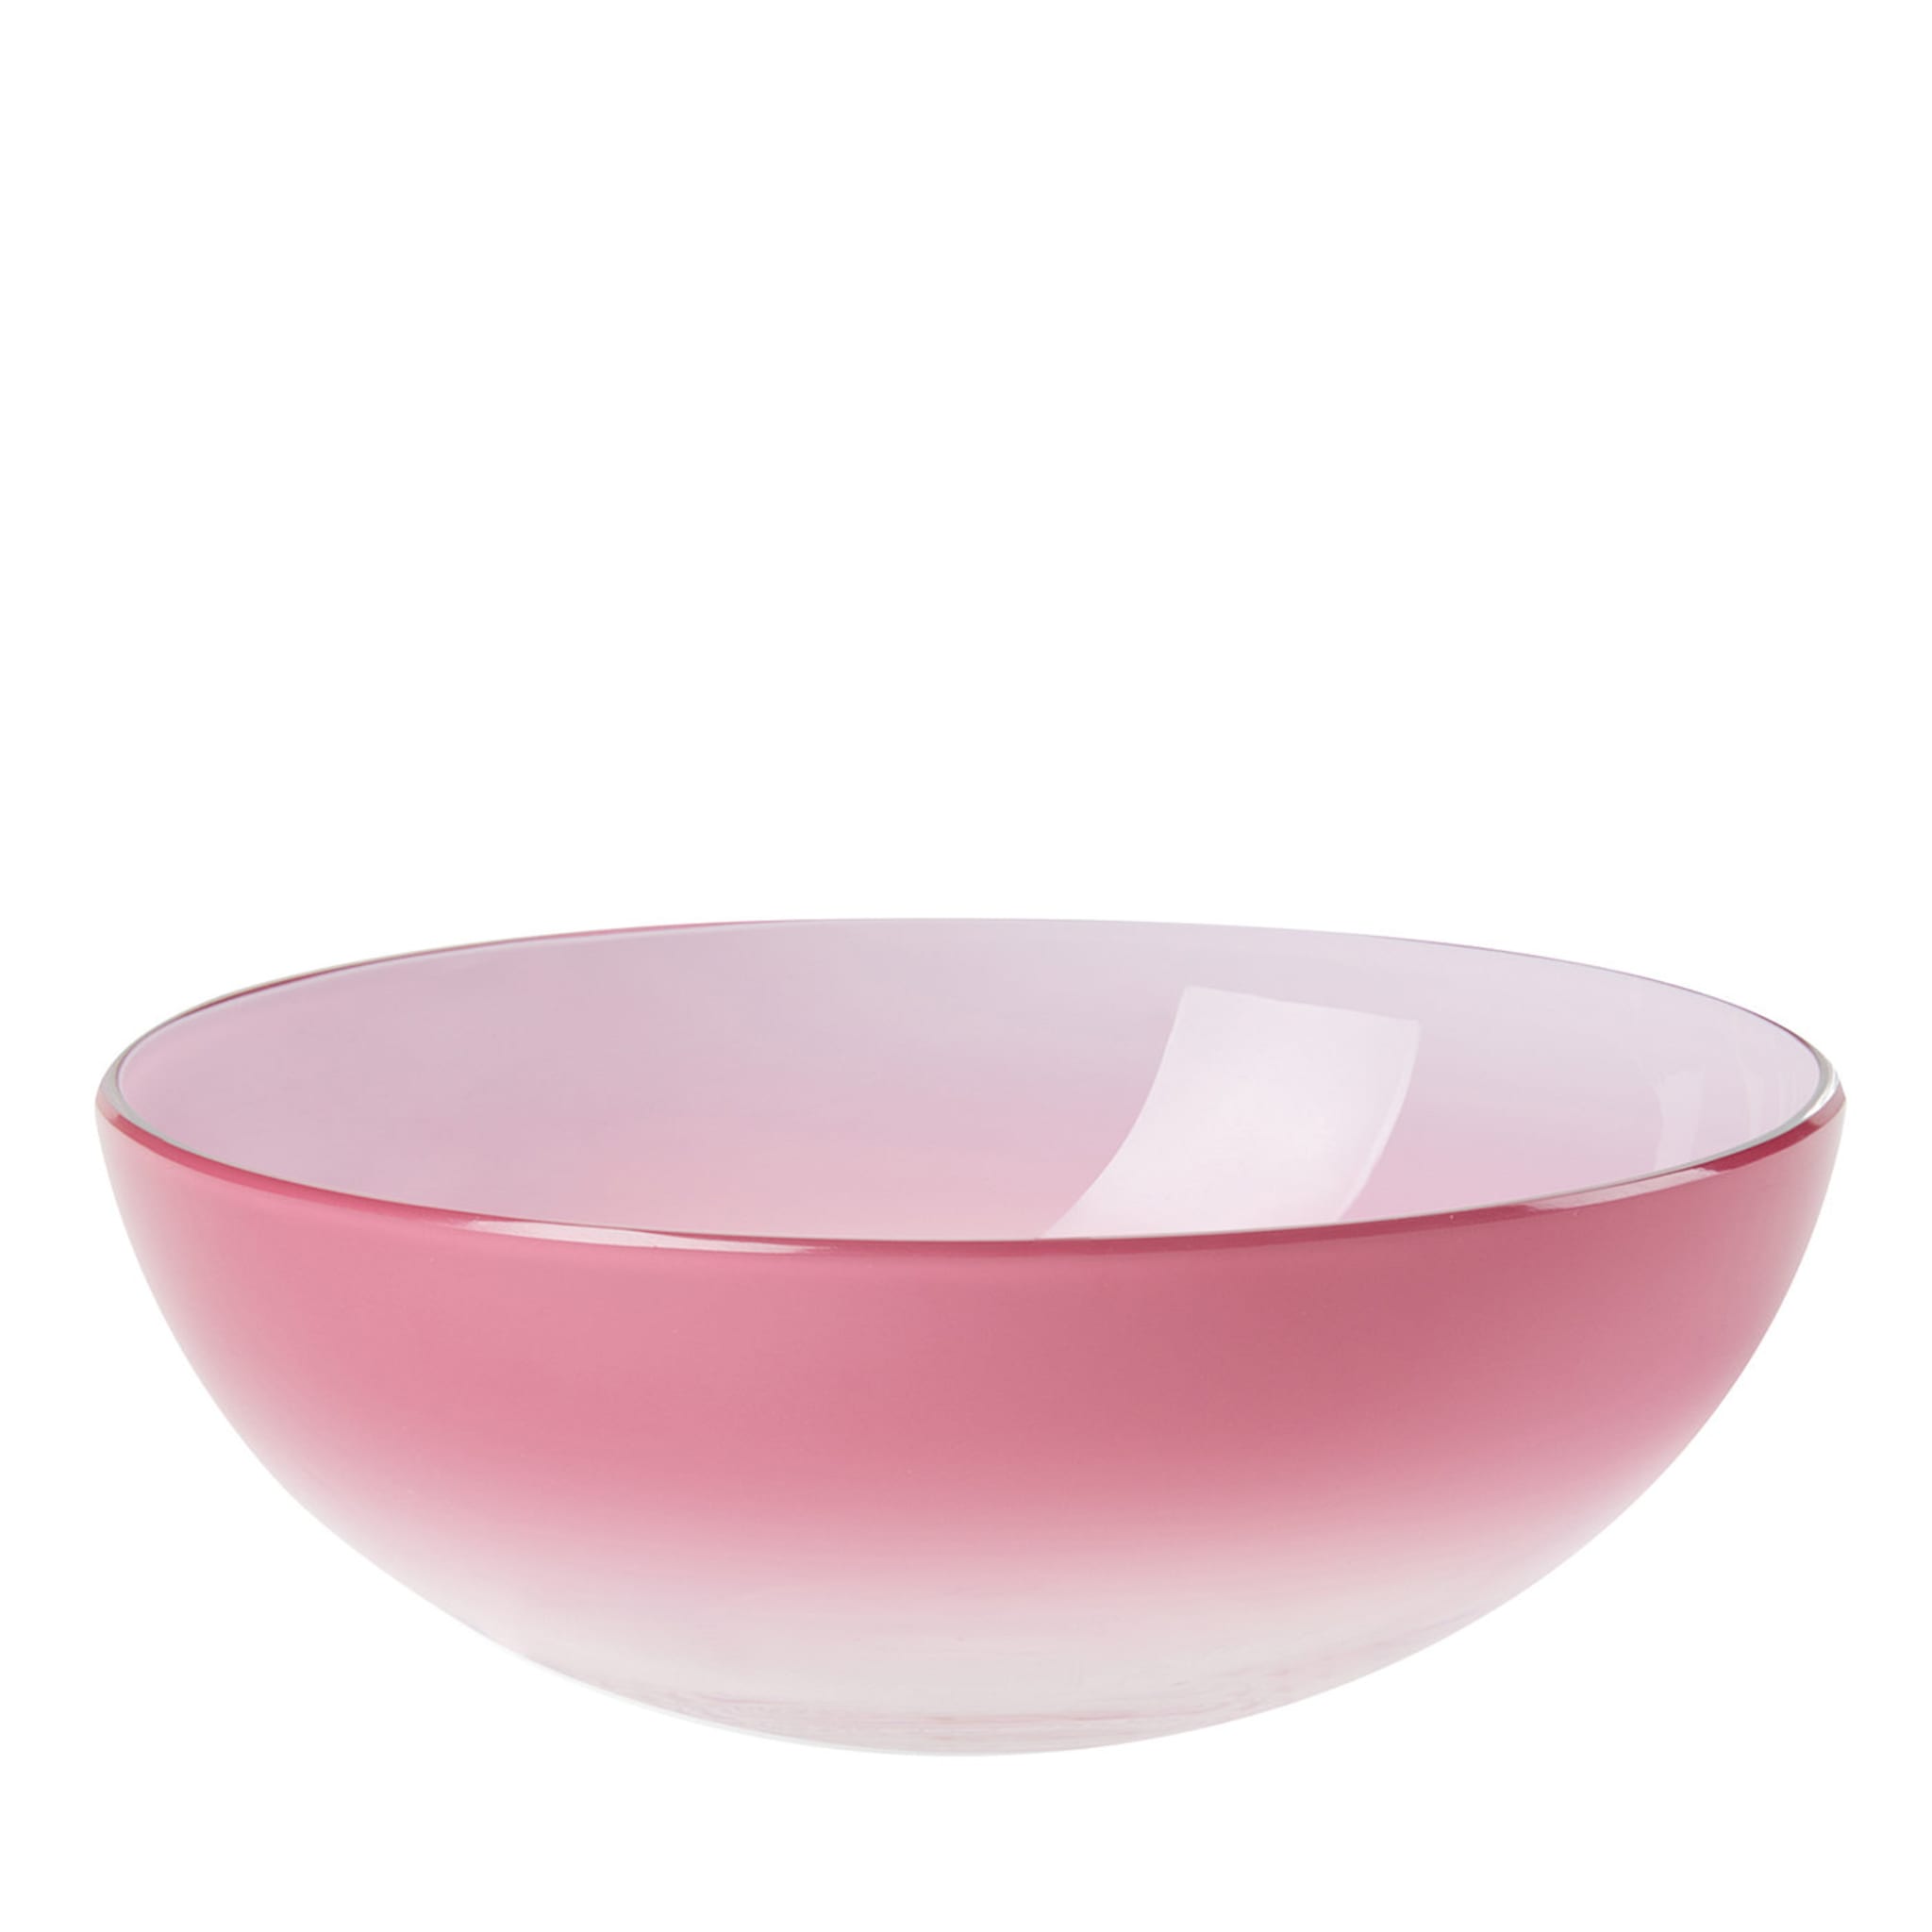 Aria Set of 2 Small Pink Bowls - Main view